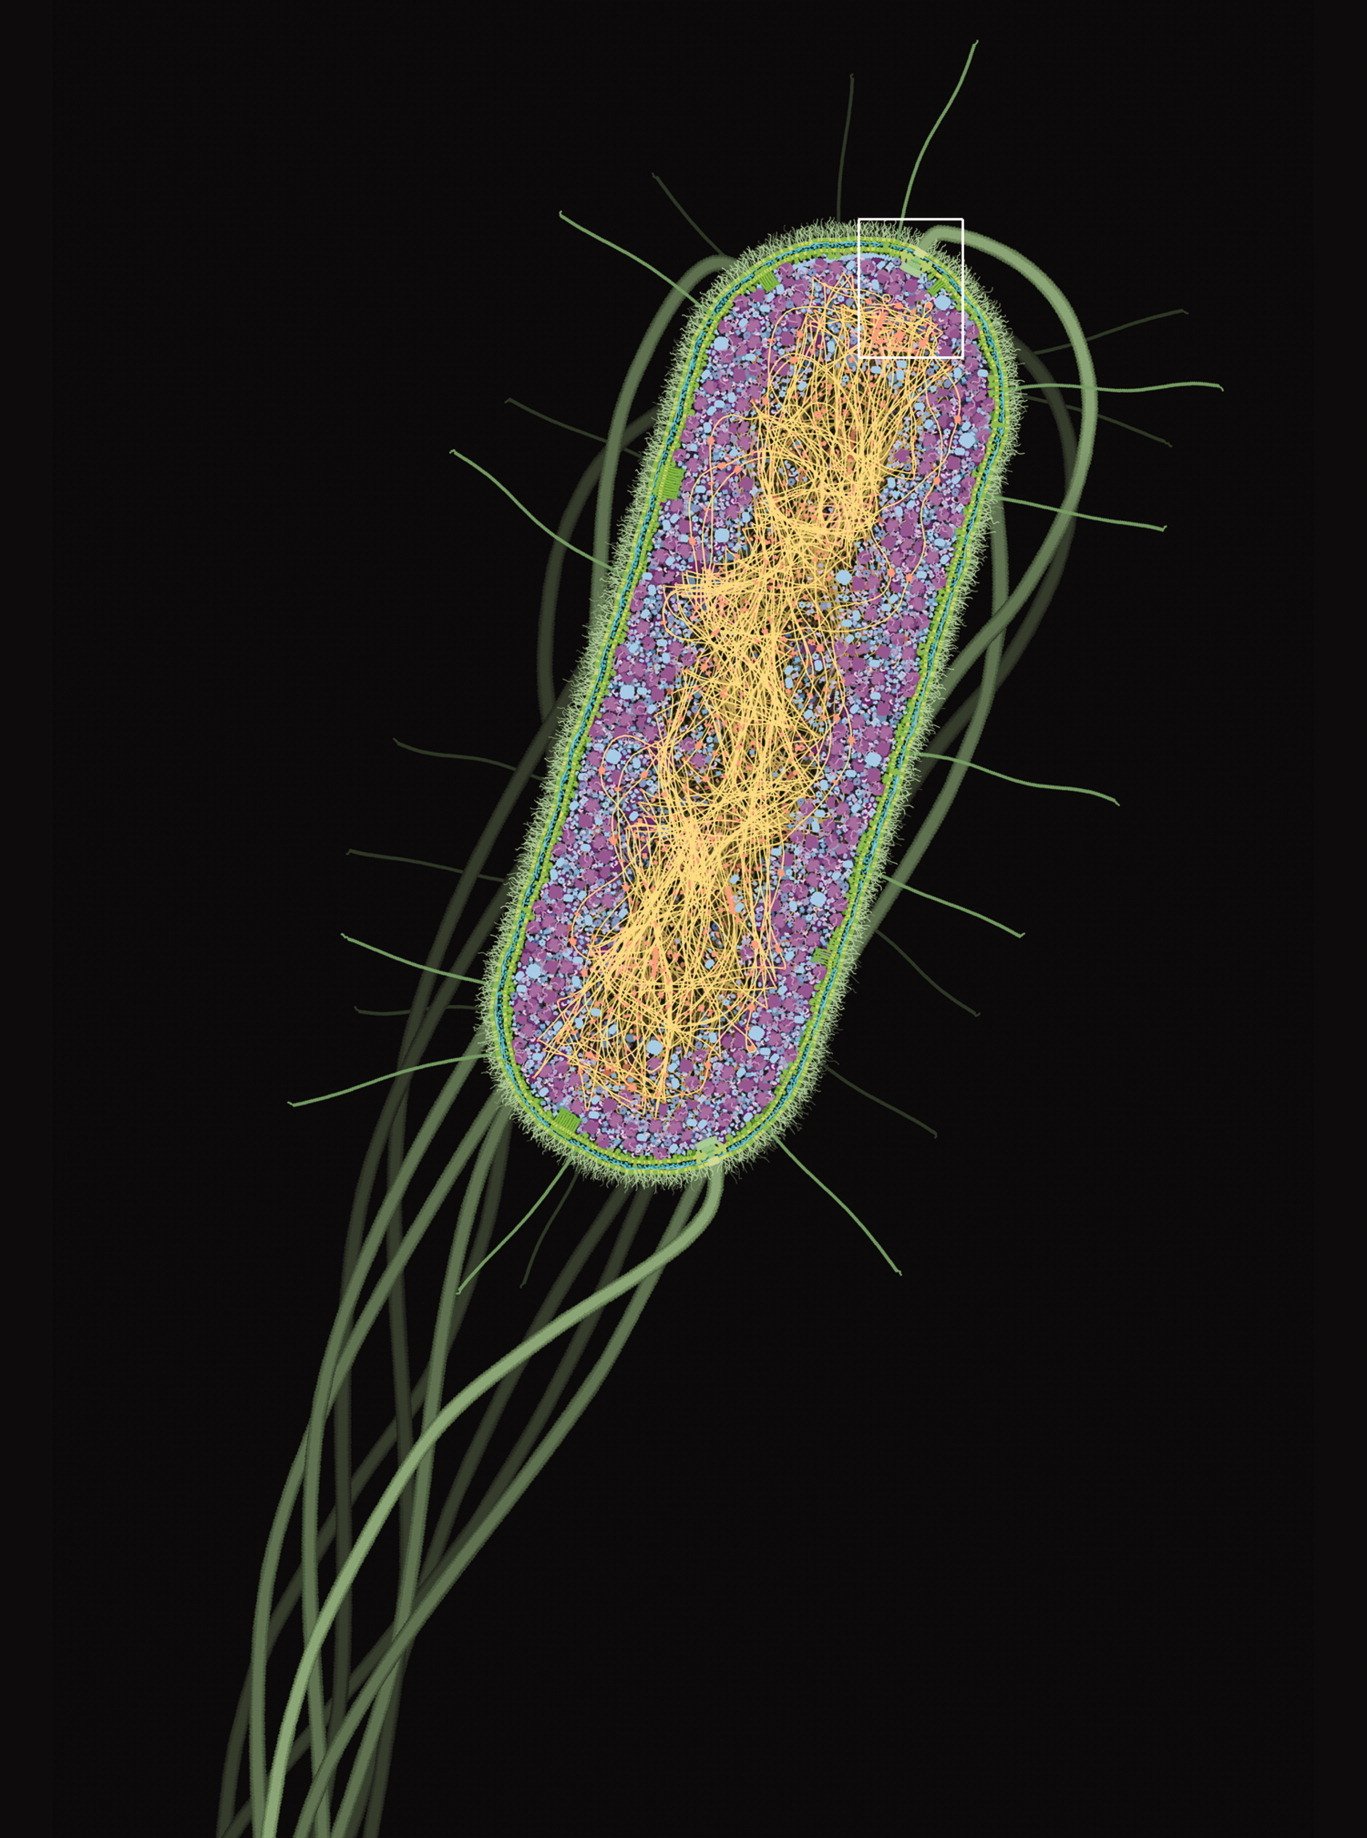 Coupe transversale d'une cellule entière d'Escherichia coli, illustration de David S. Goodsel